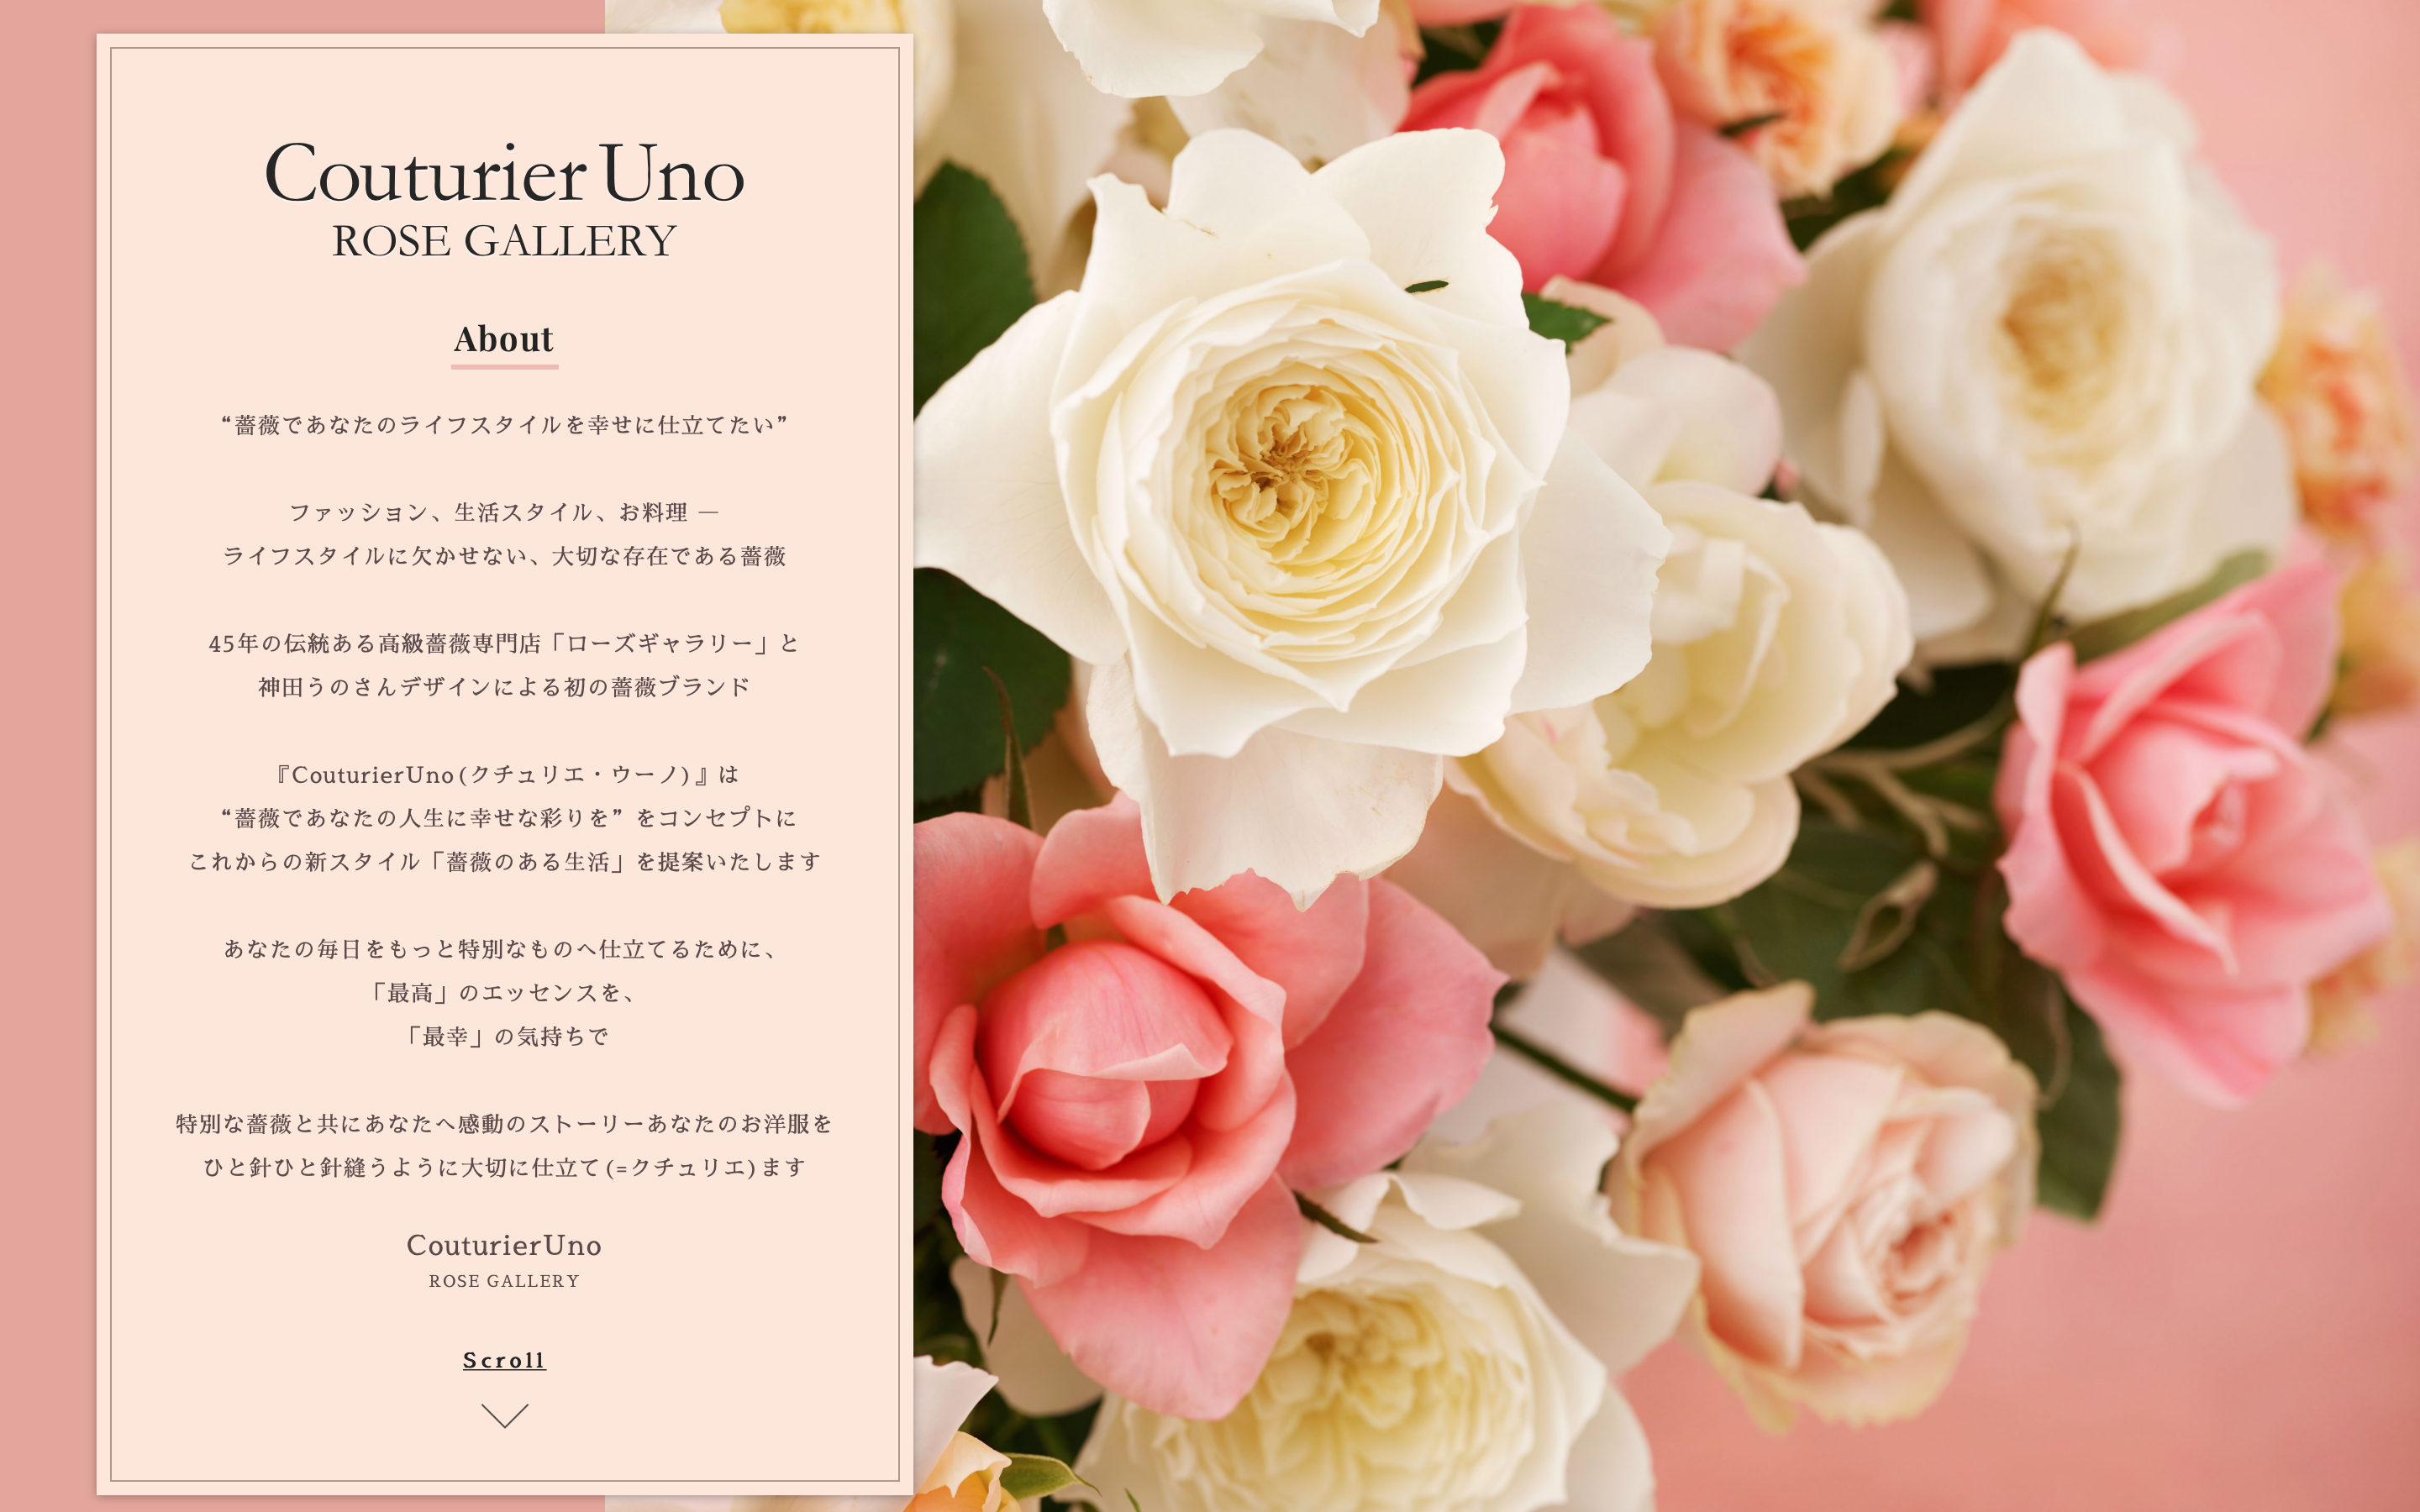 神田うのさんプロデュース 初の薔薇 ブランド Couturieruno クチュリエウーノ を今秋オンラインで販売開始 ジャパンフラワーグループ株式会社のプレスリリース